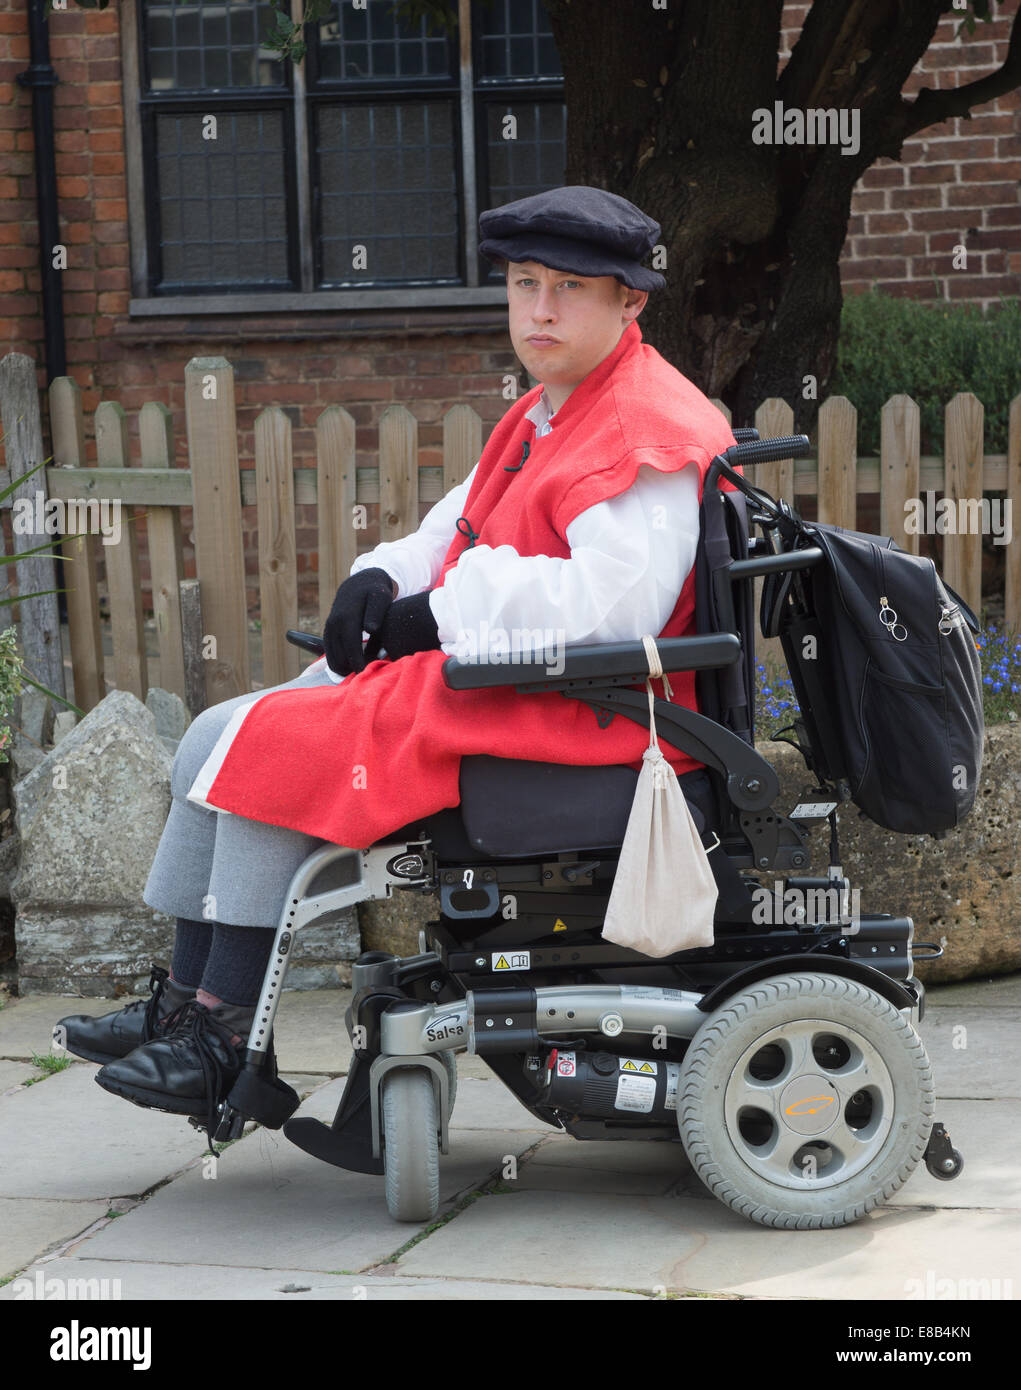 Dans l'acteur acteur shakespeare handicapés en fauteuil roulant Banque D'Images